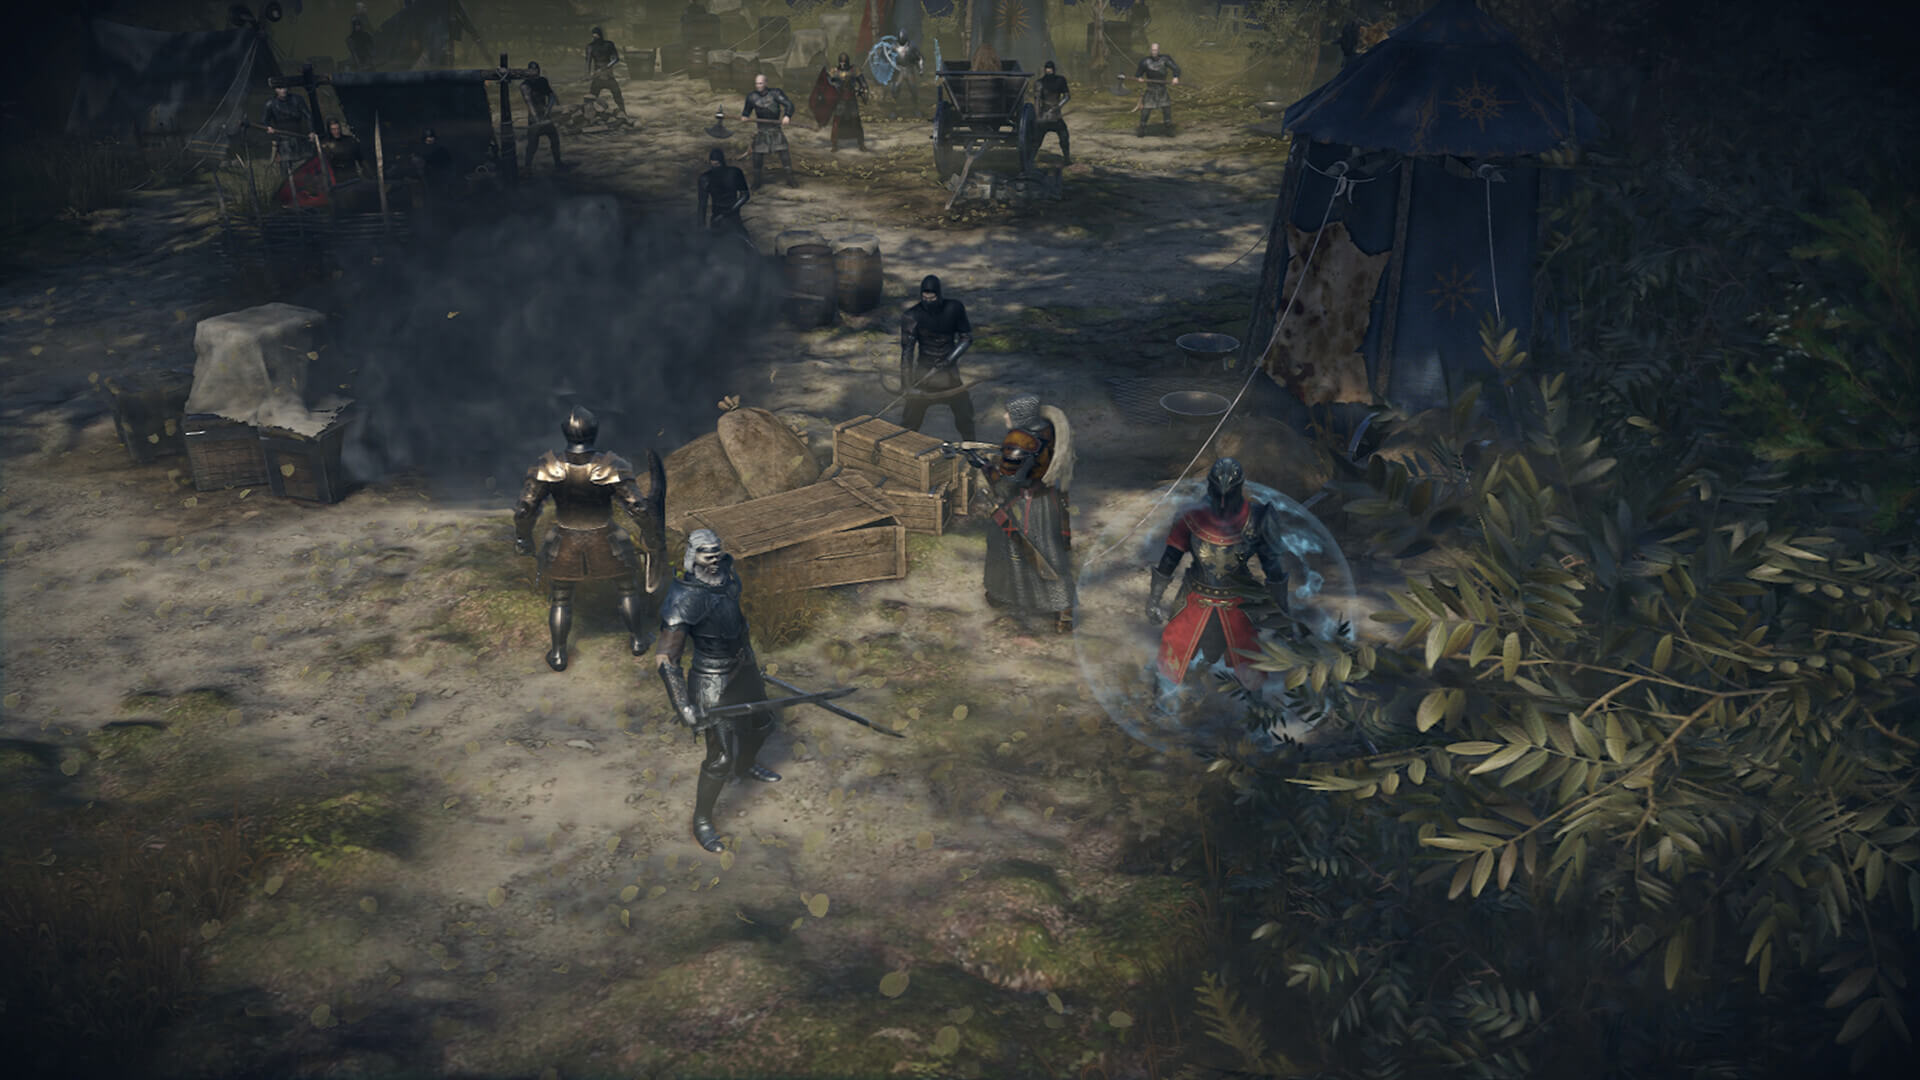 King Arthur: Knight's Tale ekran görüntüsü, saldırıya uğramak üzere olan bir düşman kampını gösteriyor.